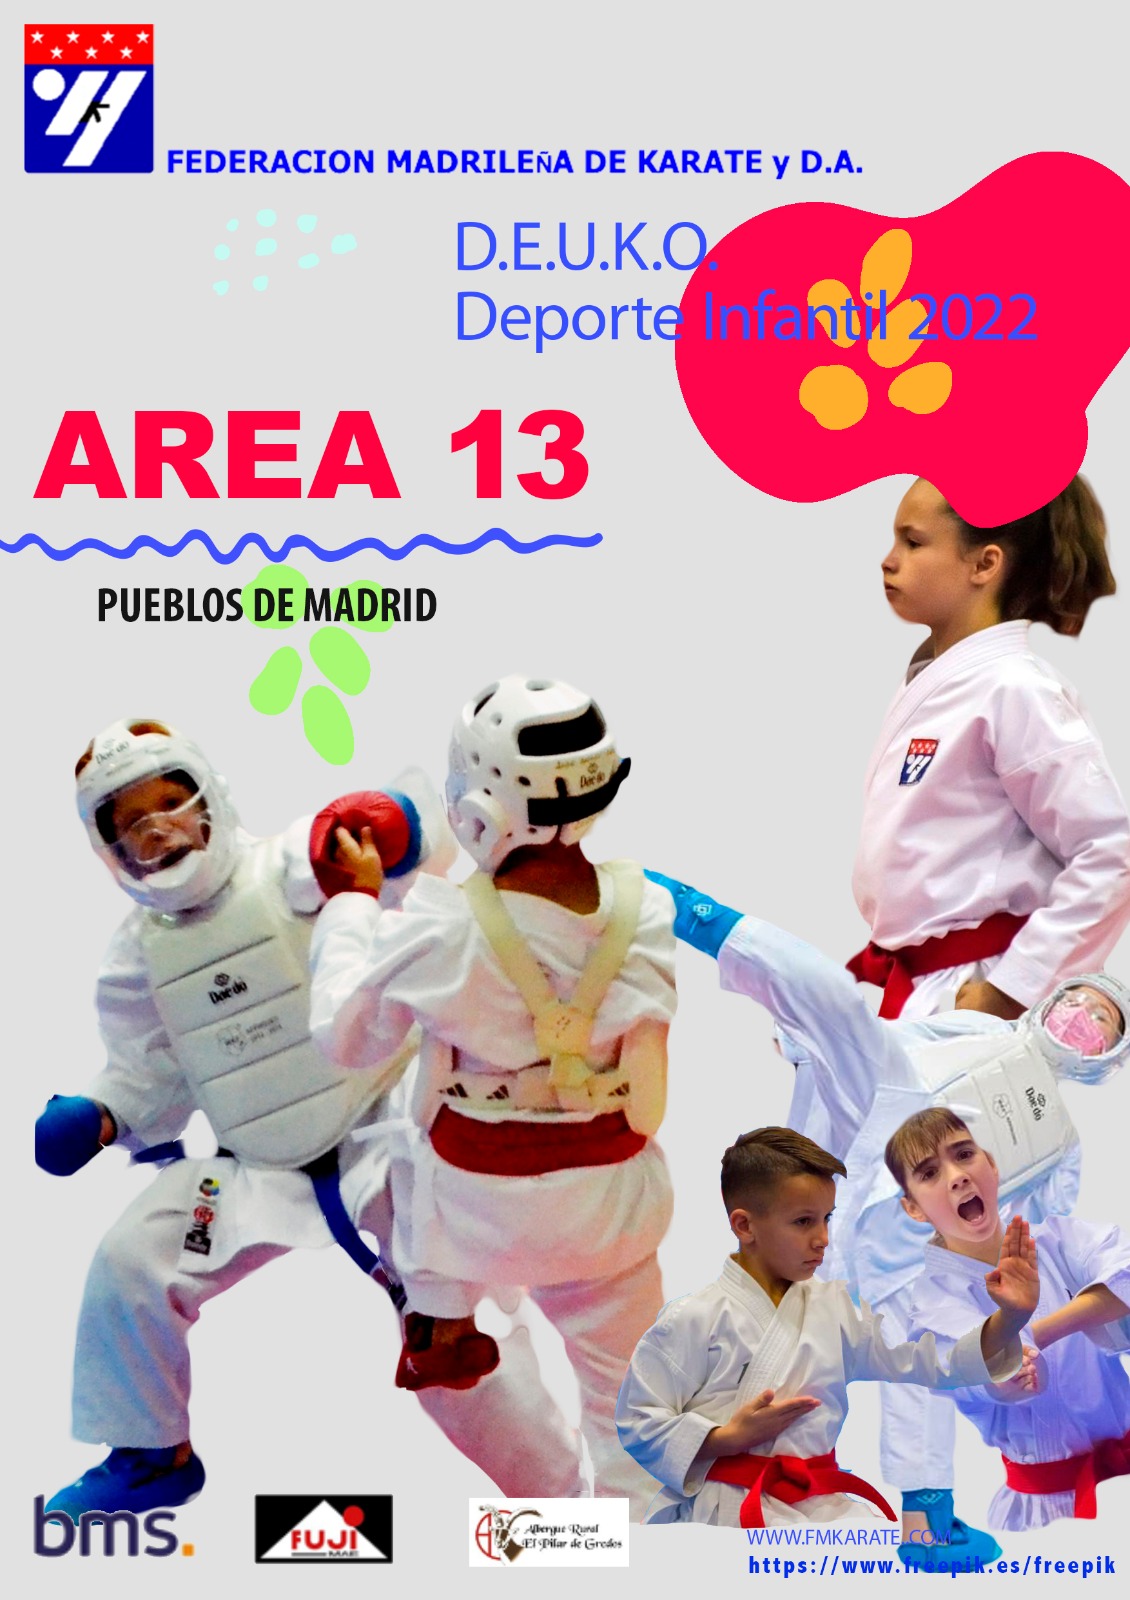 Madrid DEUKO 2022 - Área 13